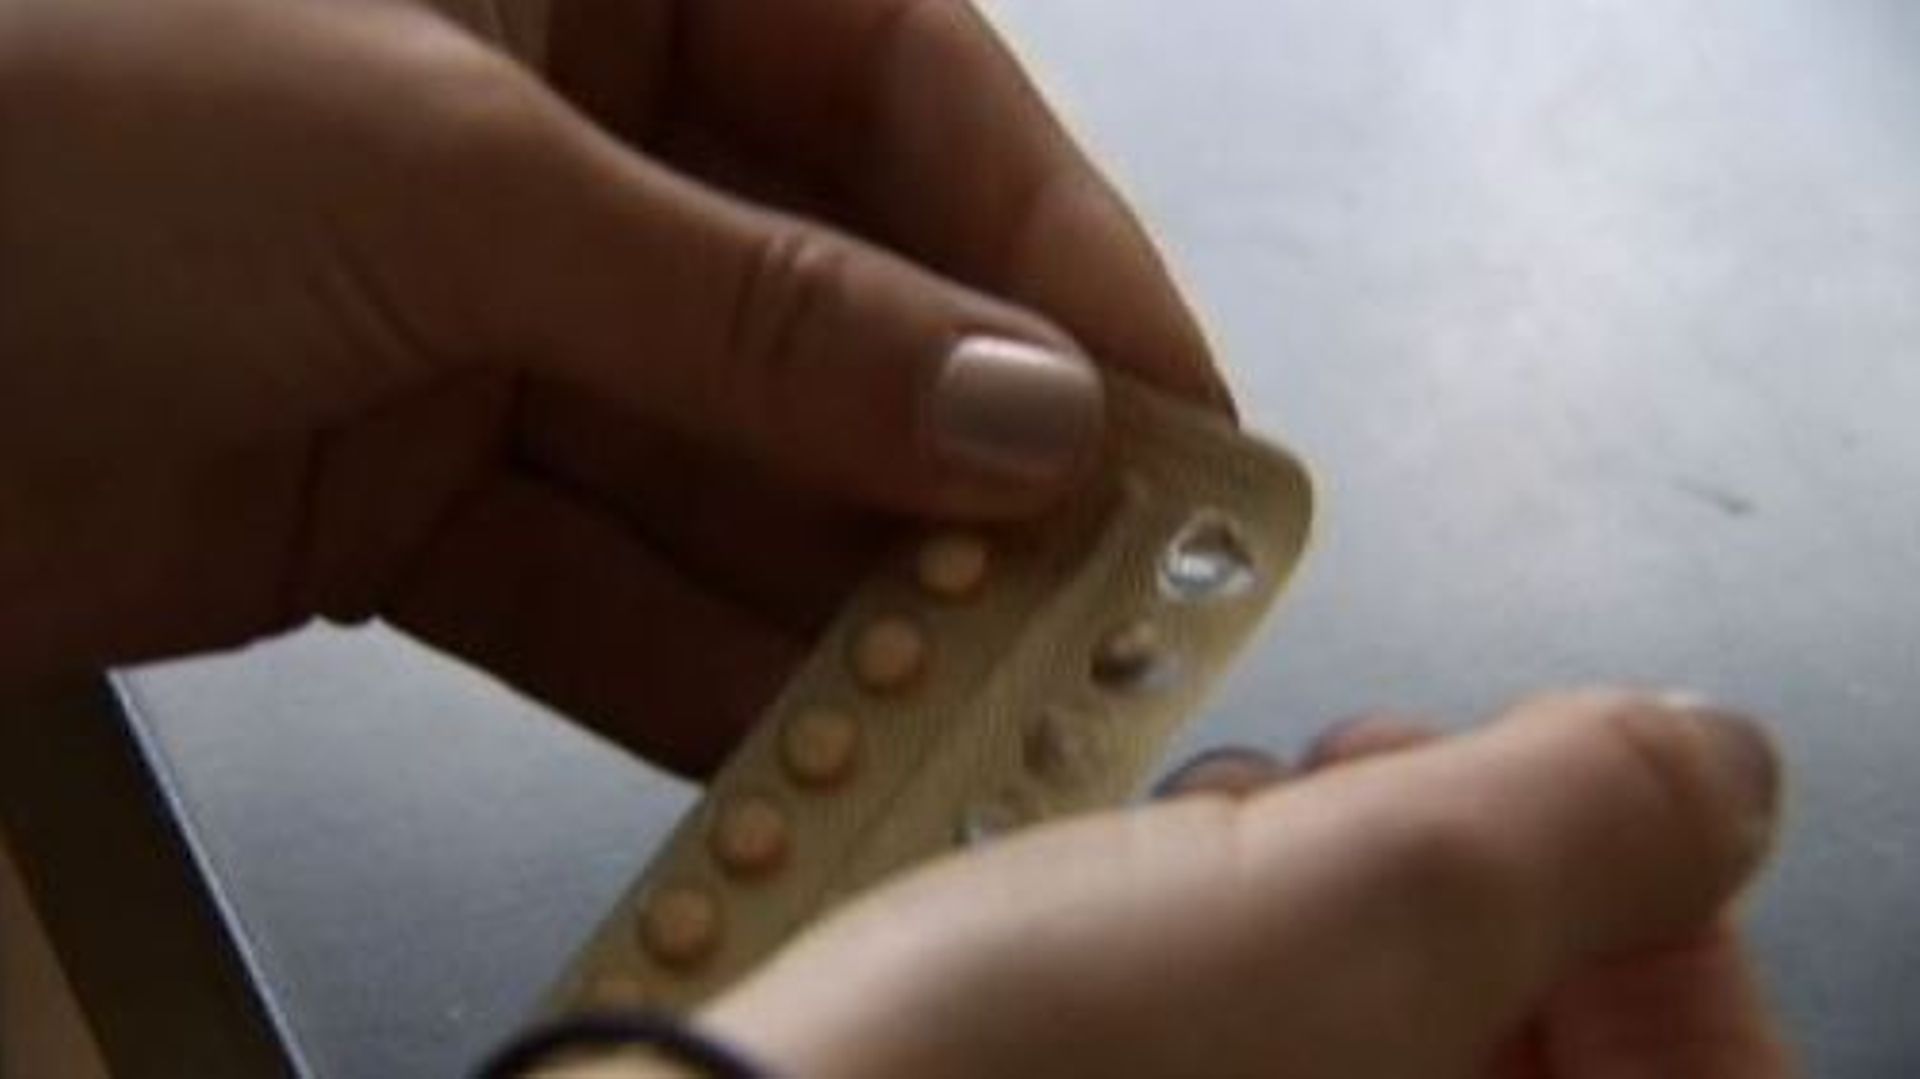 wallonie-interdiction-dans-les-plannings-familiaux-de-delivrer-la-pilule